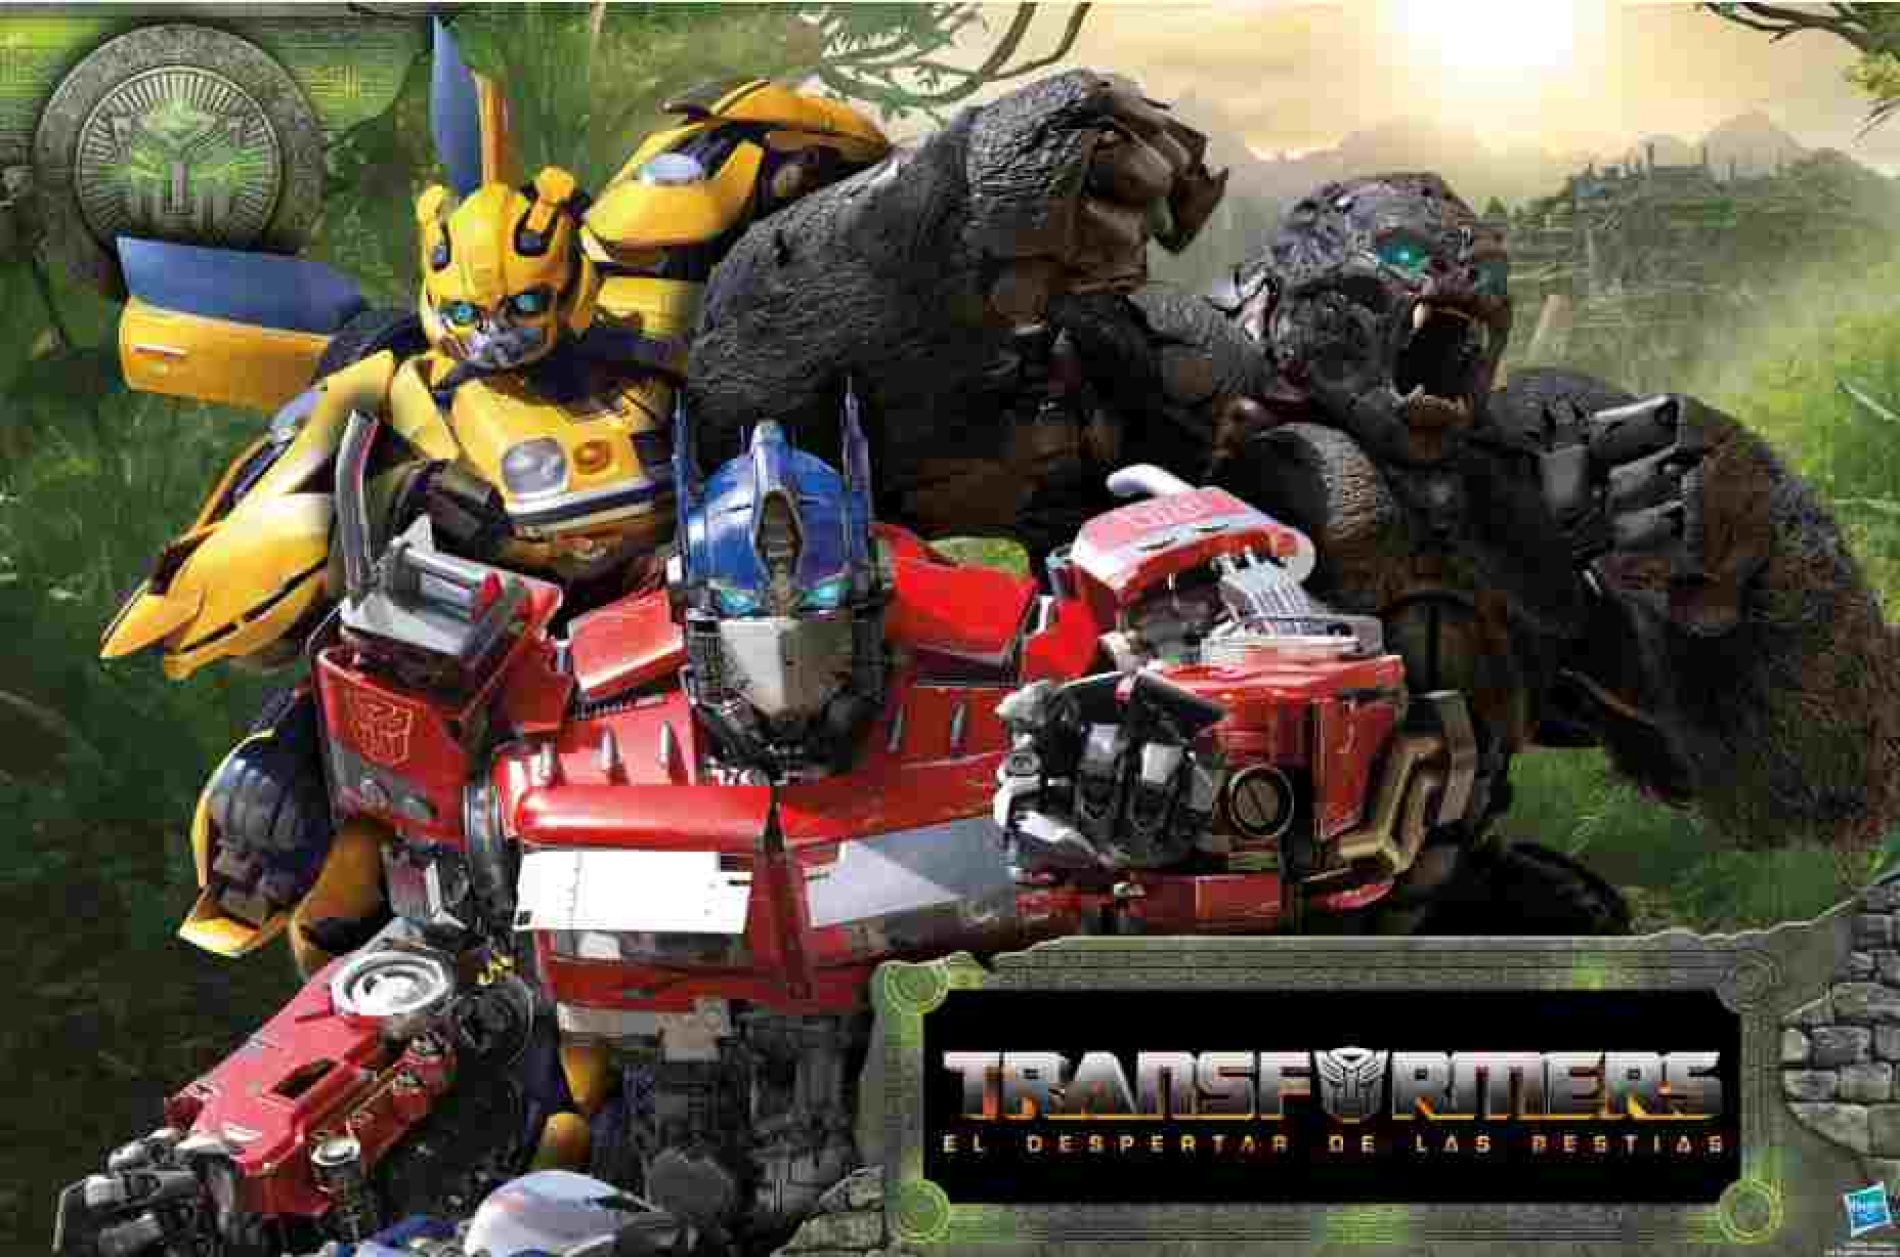 Cinco datos que debe saber antes de ver Transformers: “El despertar de las bestias”